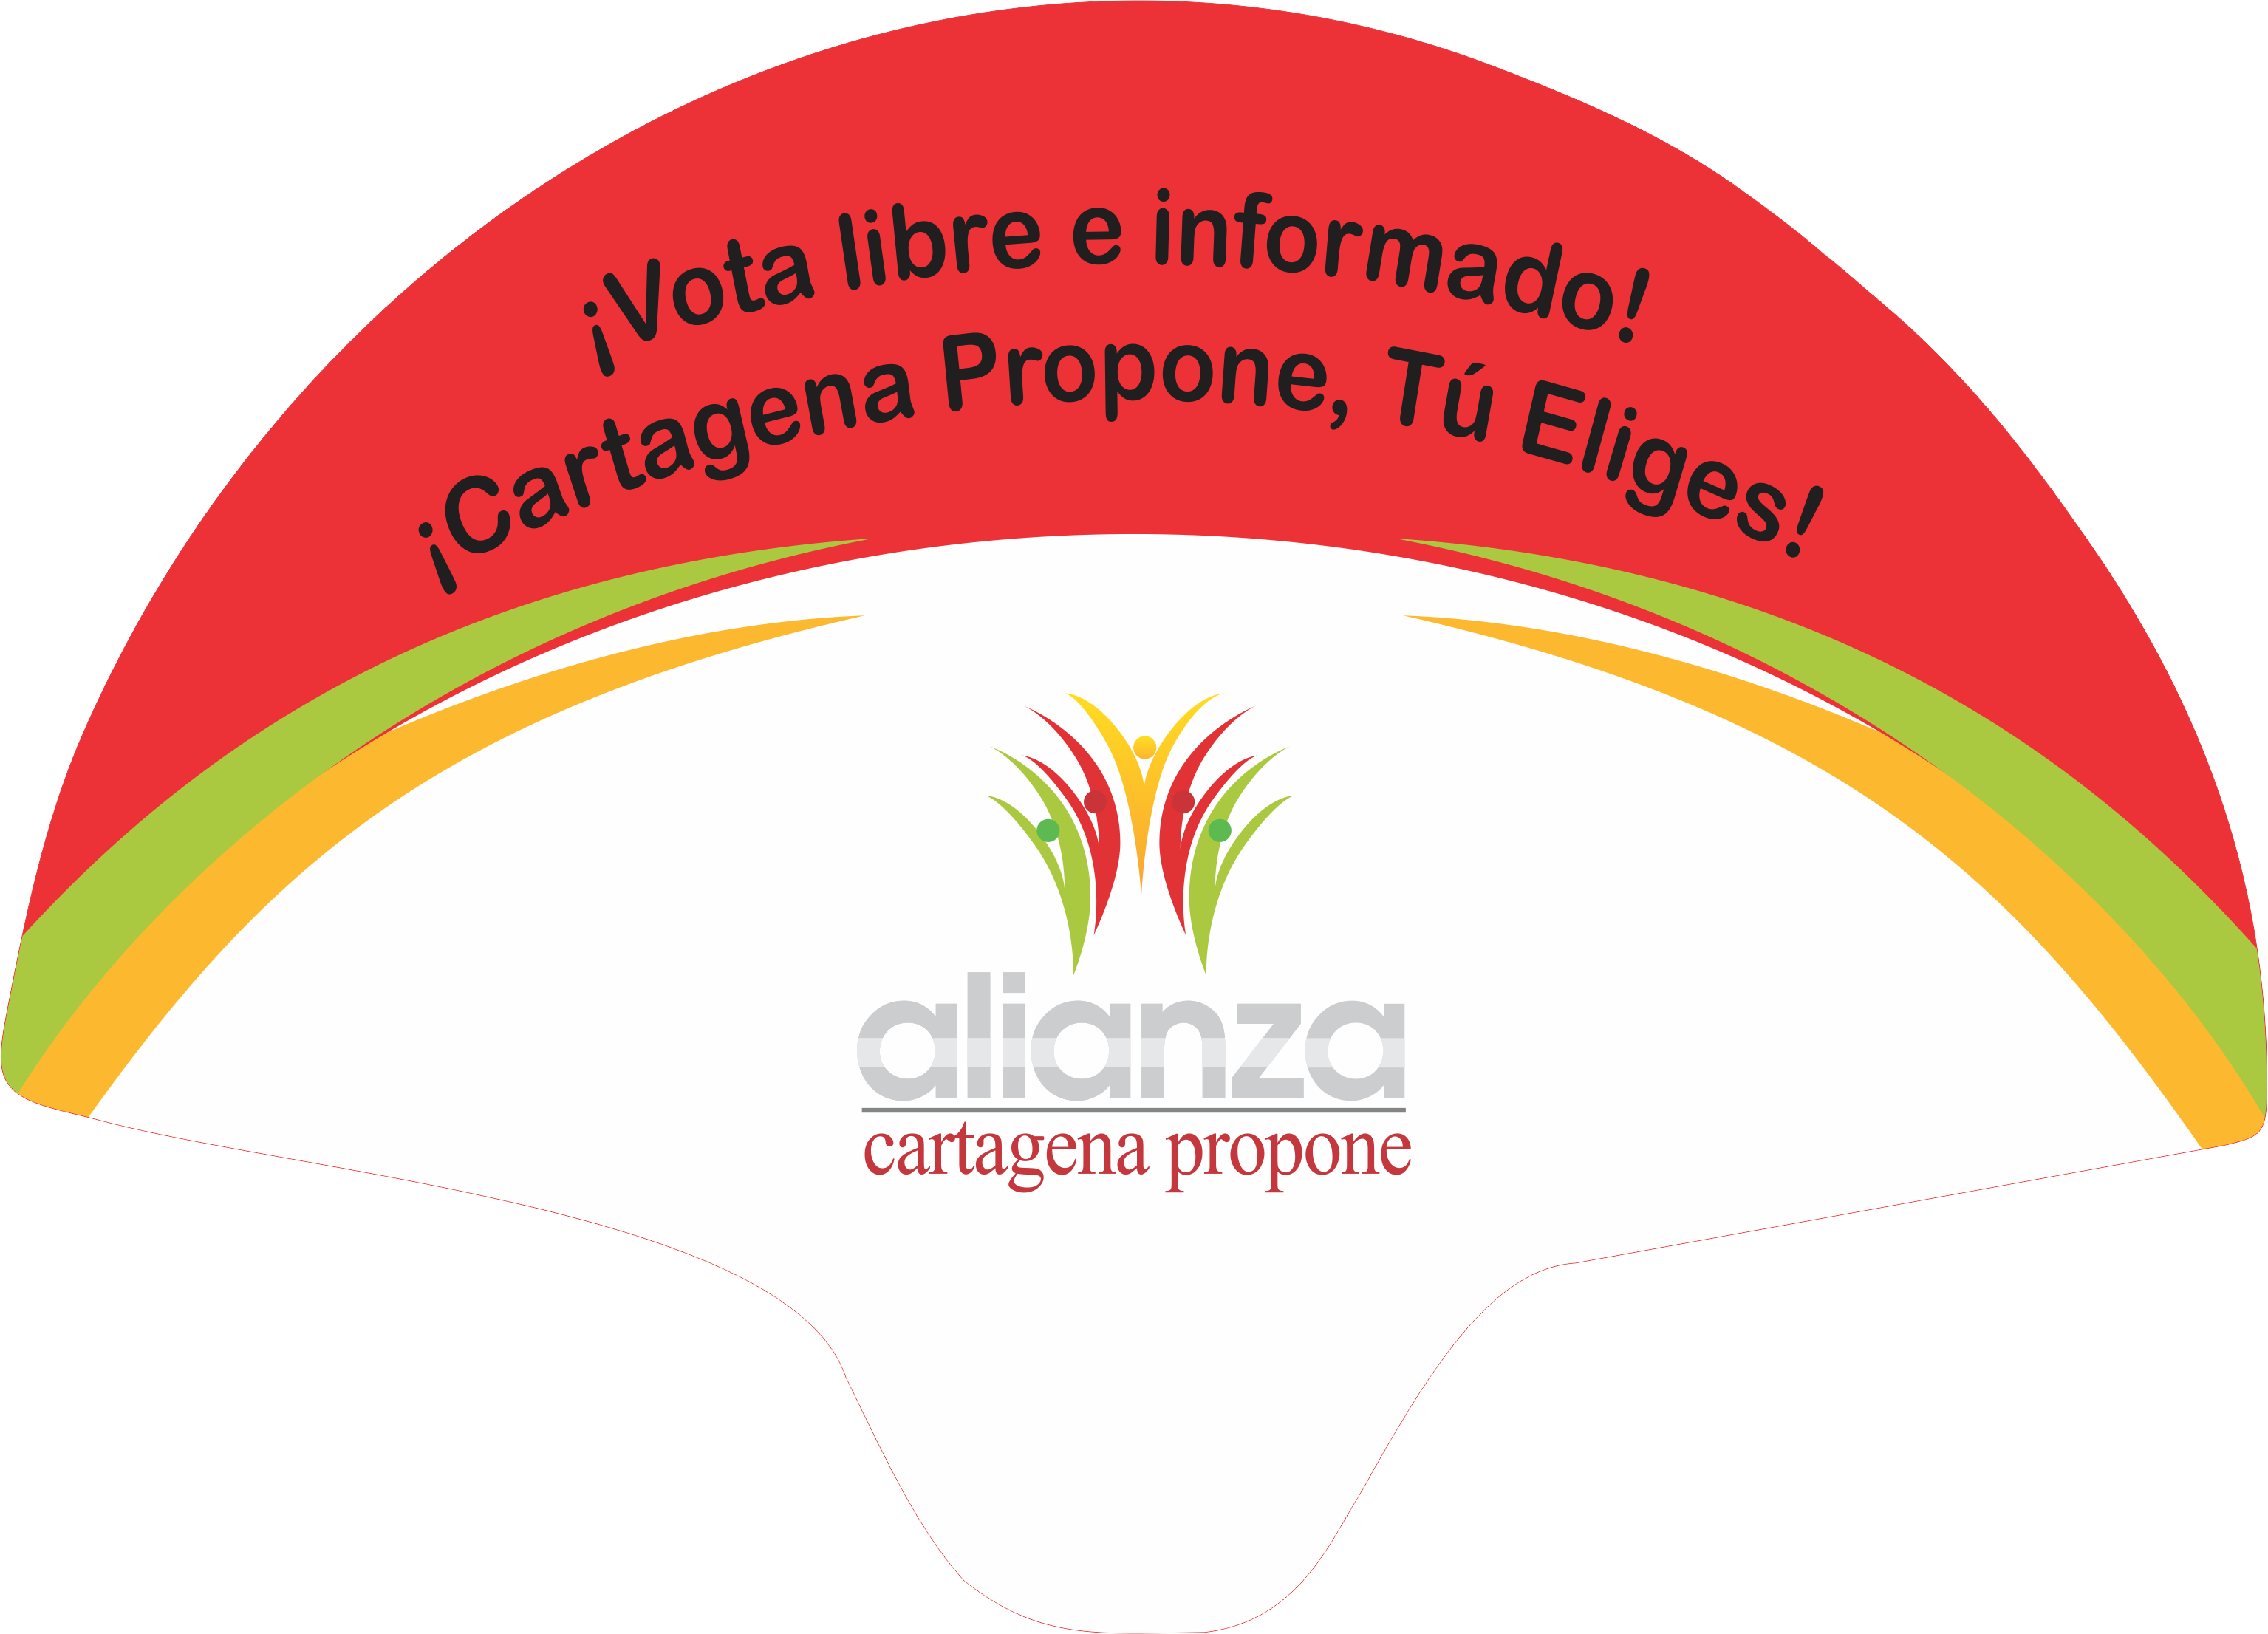 ¡Vota libre e informado! ¡Cartagena Propone, Tú eliges! Alianza Cartagena Propone.